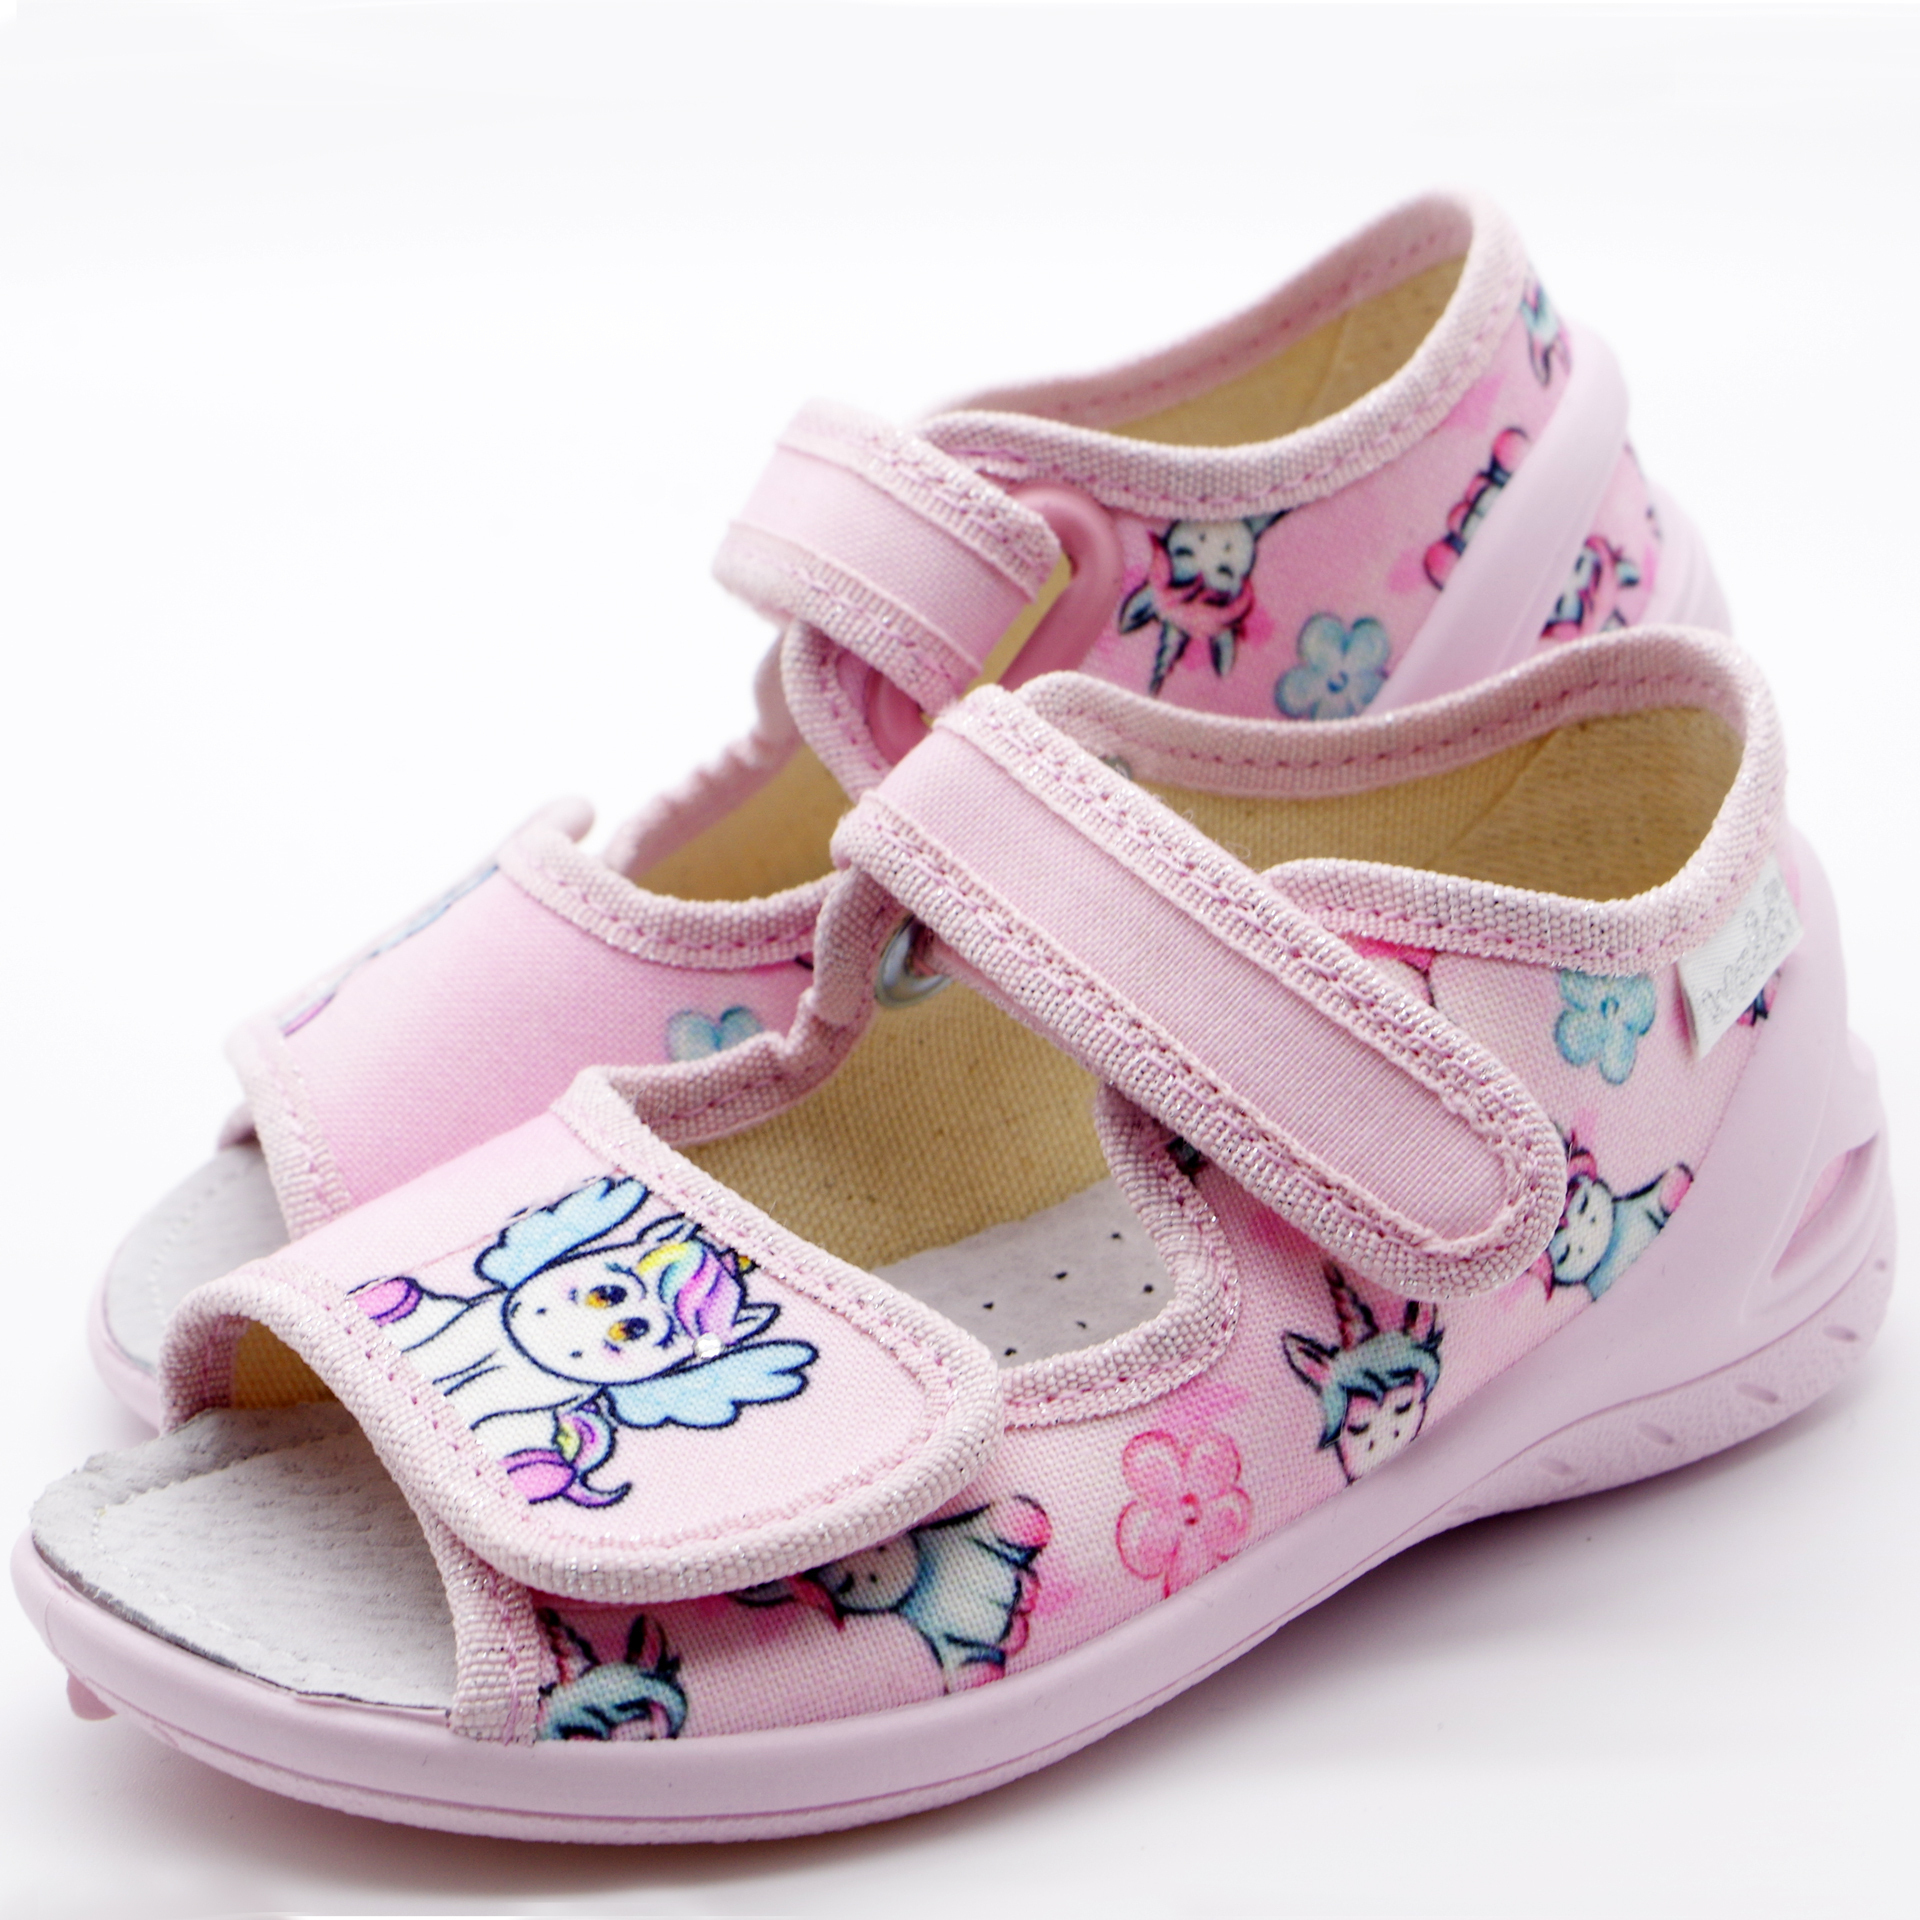 Текстильная обувь для девочек Тапочки Ева Единорог (2180) цвет Микс 23-30 размеры – Sole Kids. Фото 4